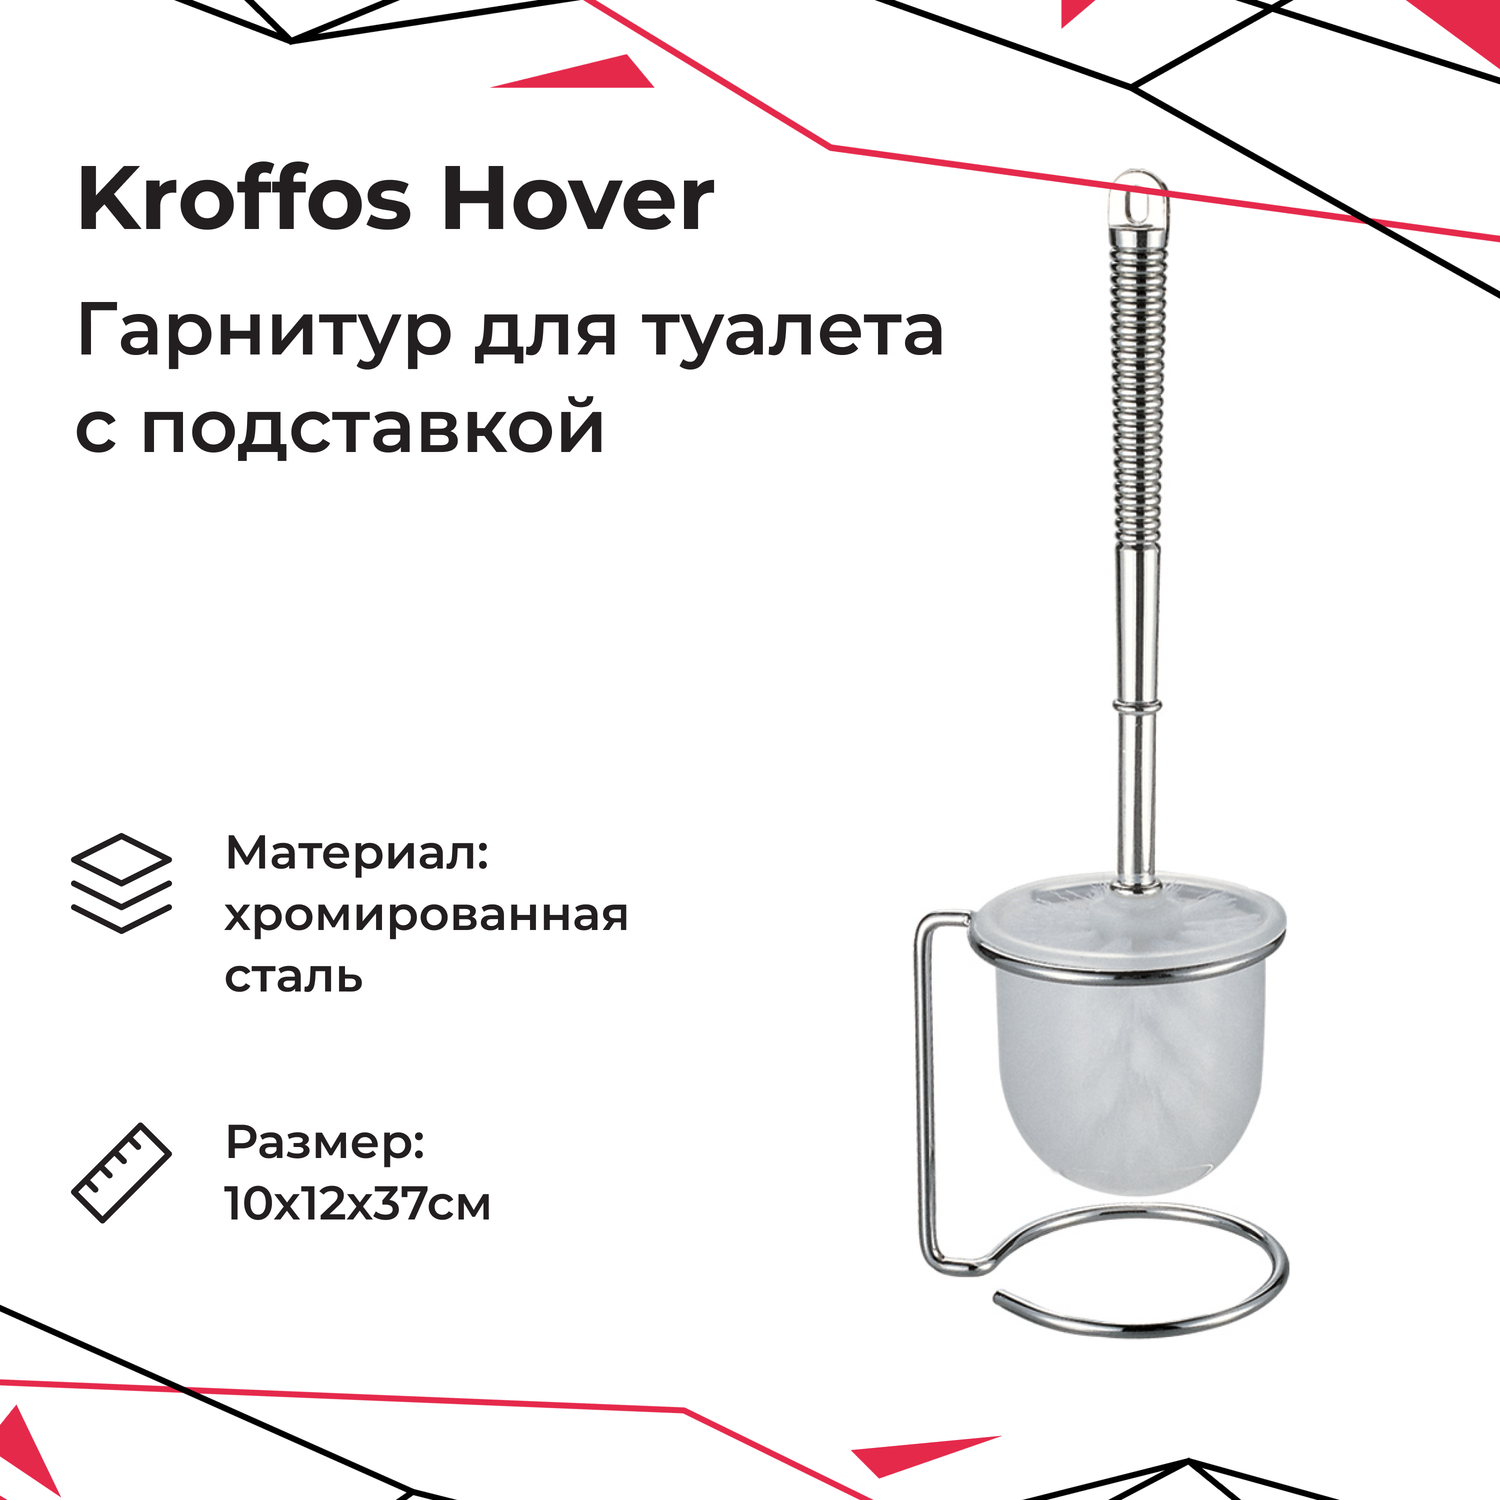 Гарнитур для туалета KROFFOS hover с подставкой - фото 1